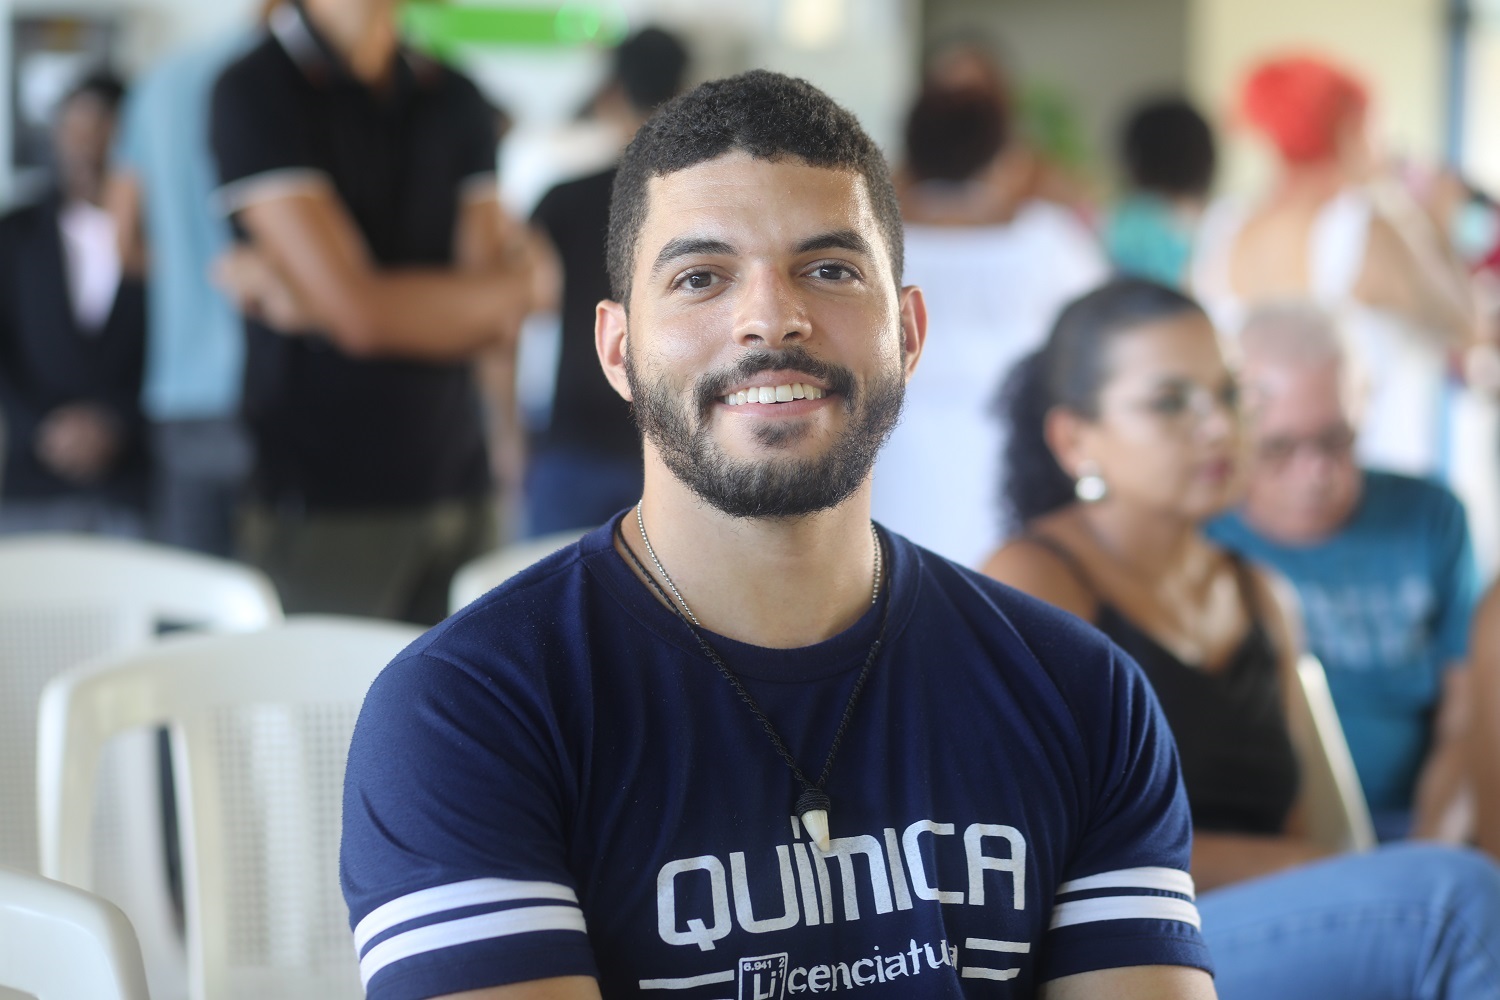 Fernando Amado é estudante de Química da UFS. (foto: Janaína Cavalcante/Ascom UFS)